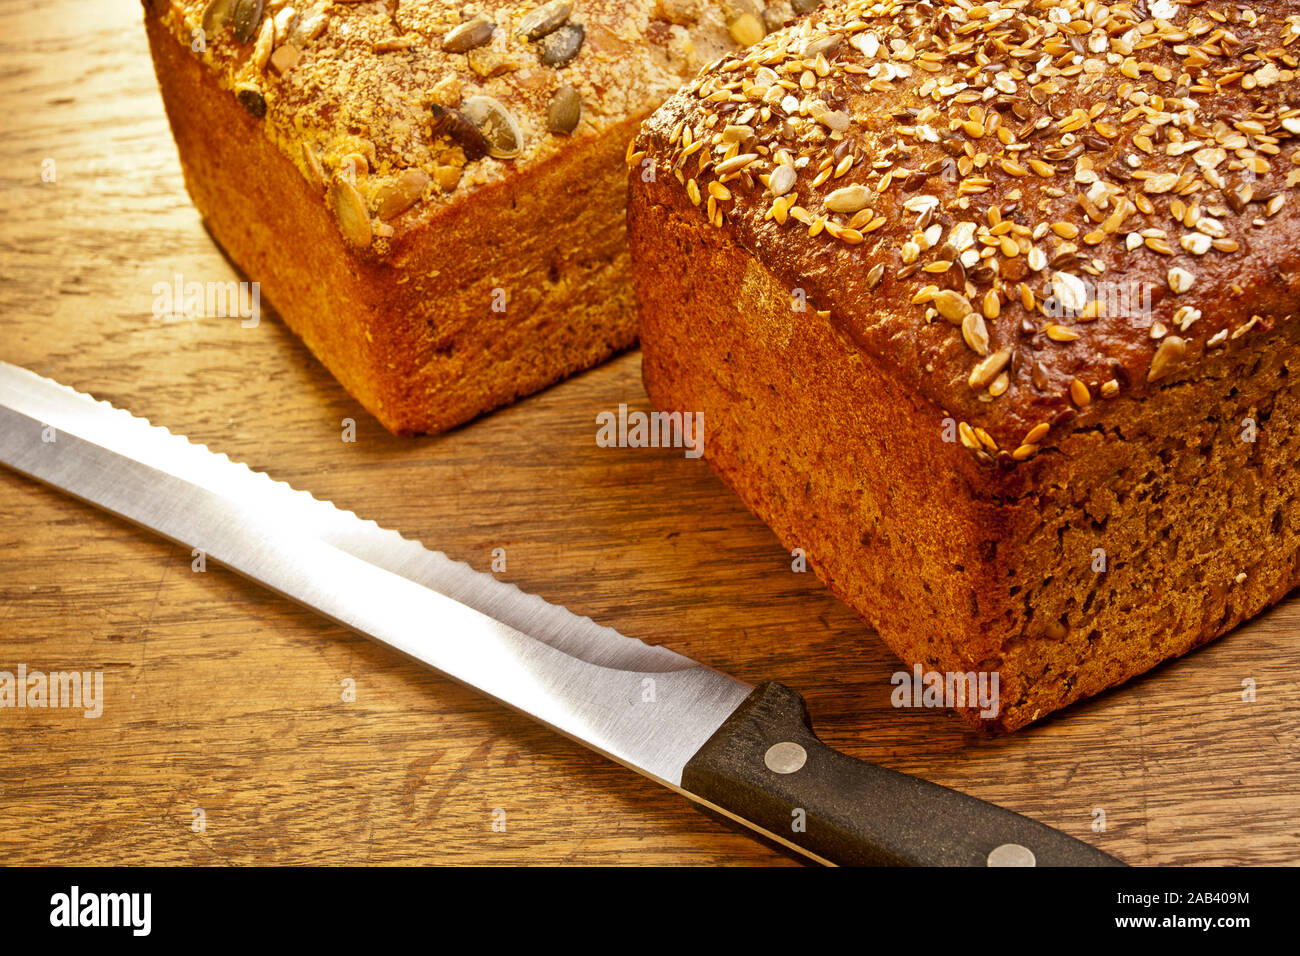 Mehrkornbrot und Kürbiskernbrot mit einem Brotmesser auf einer Tischplatte |Multi-grain bread and pumpkin bread with a bread knife on a table top| Stock Photo